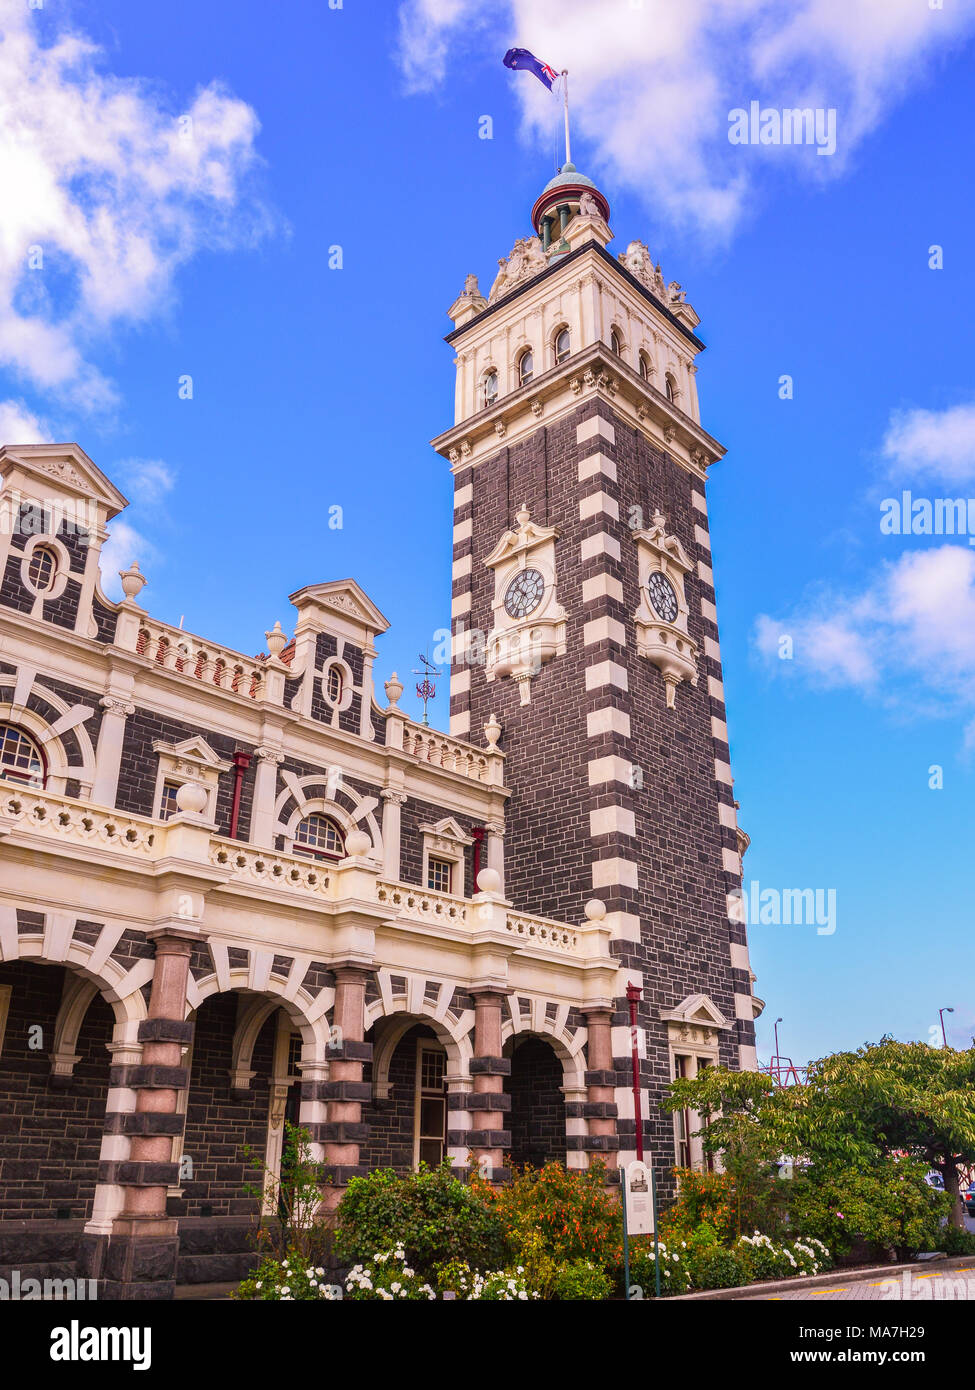 Clock Tower von Dunedin Railway Station - Dunedin, Neuseeland Stockfoto